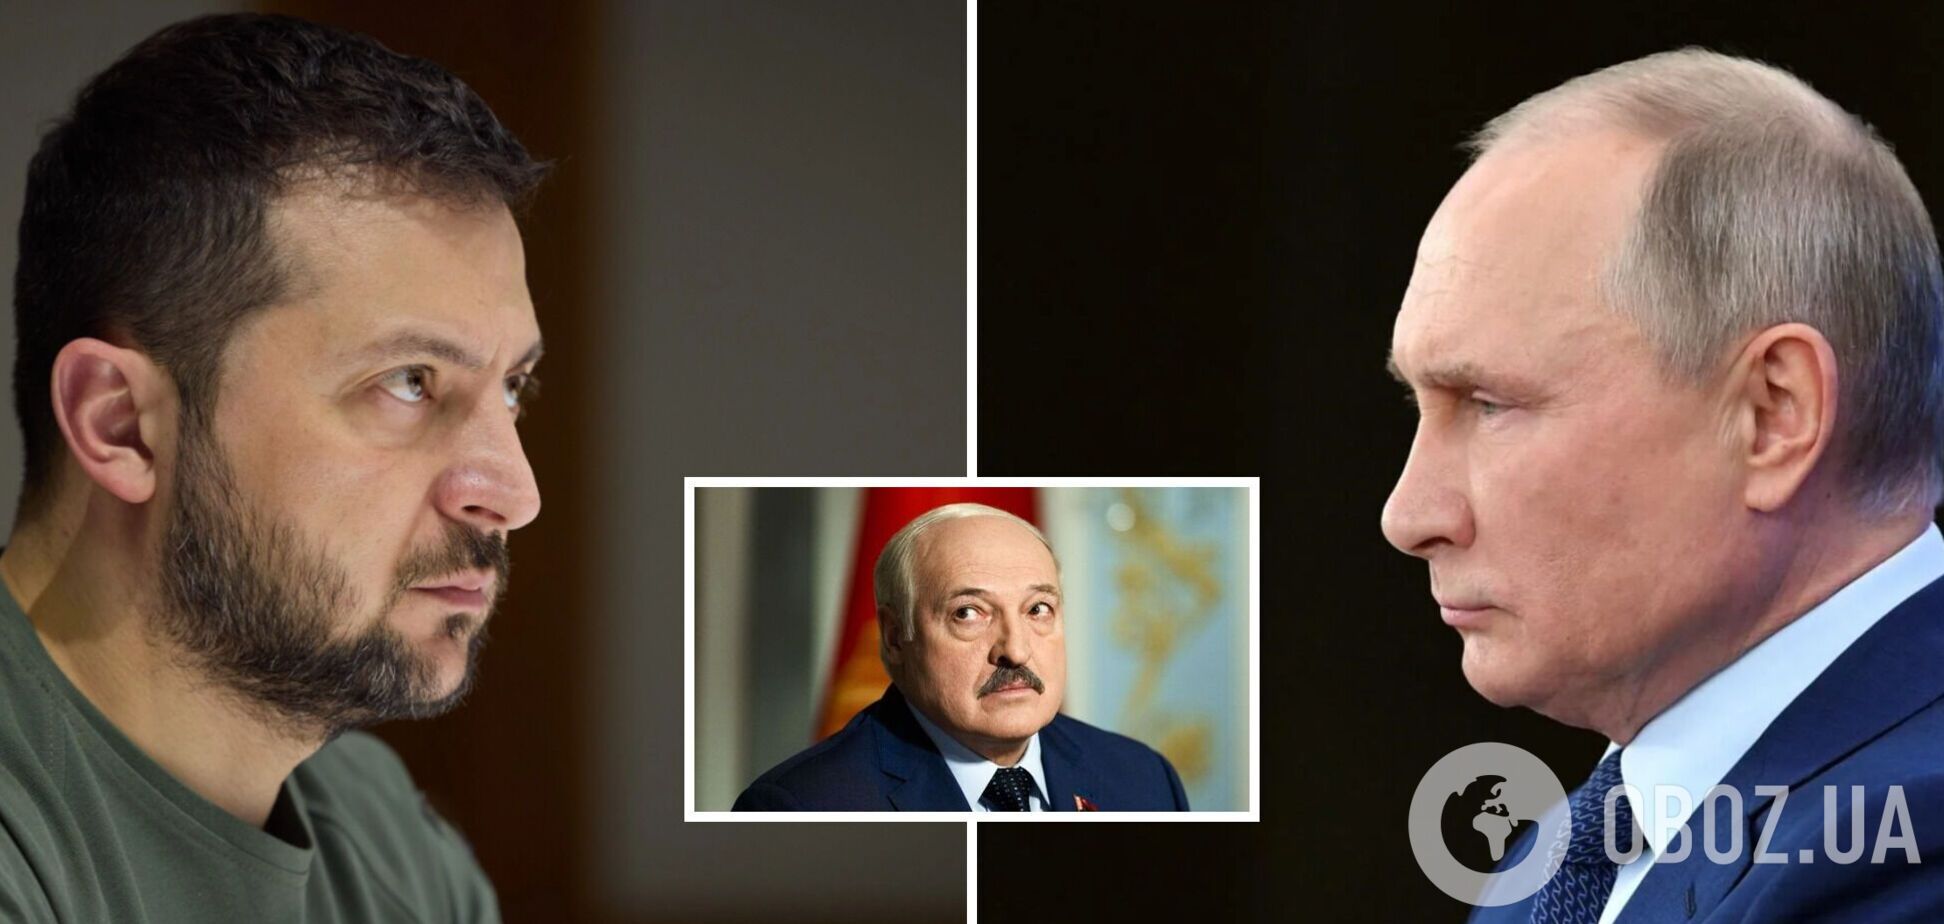 'Мы должны остановить это сейчас': Лукашенко надел личину 'миротворца' и призвал Украину к переговорам с РФ 'без условий'